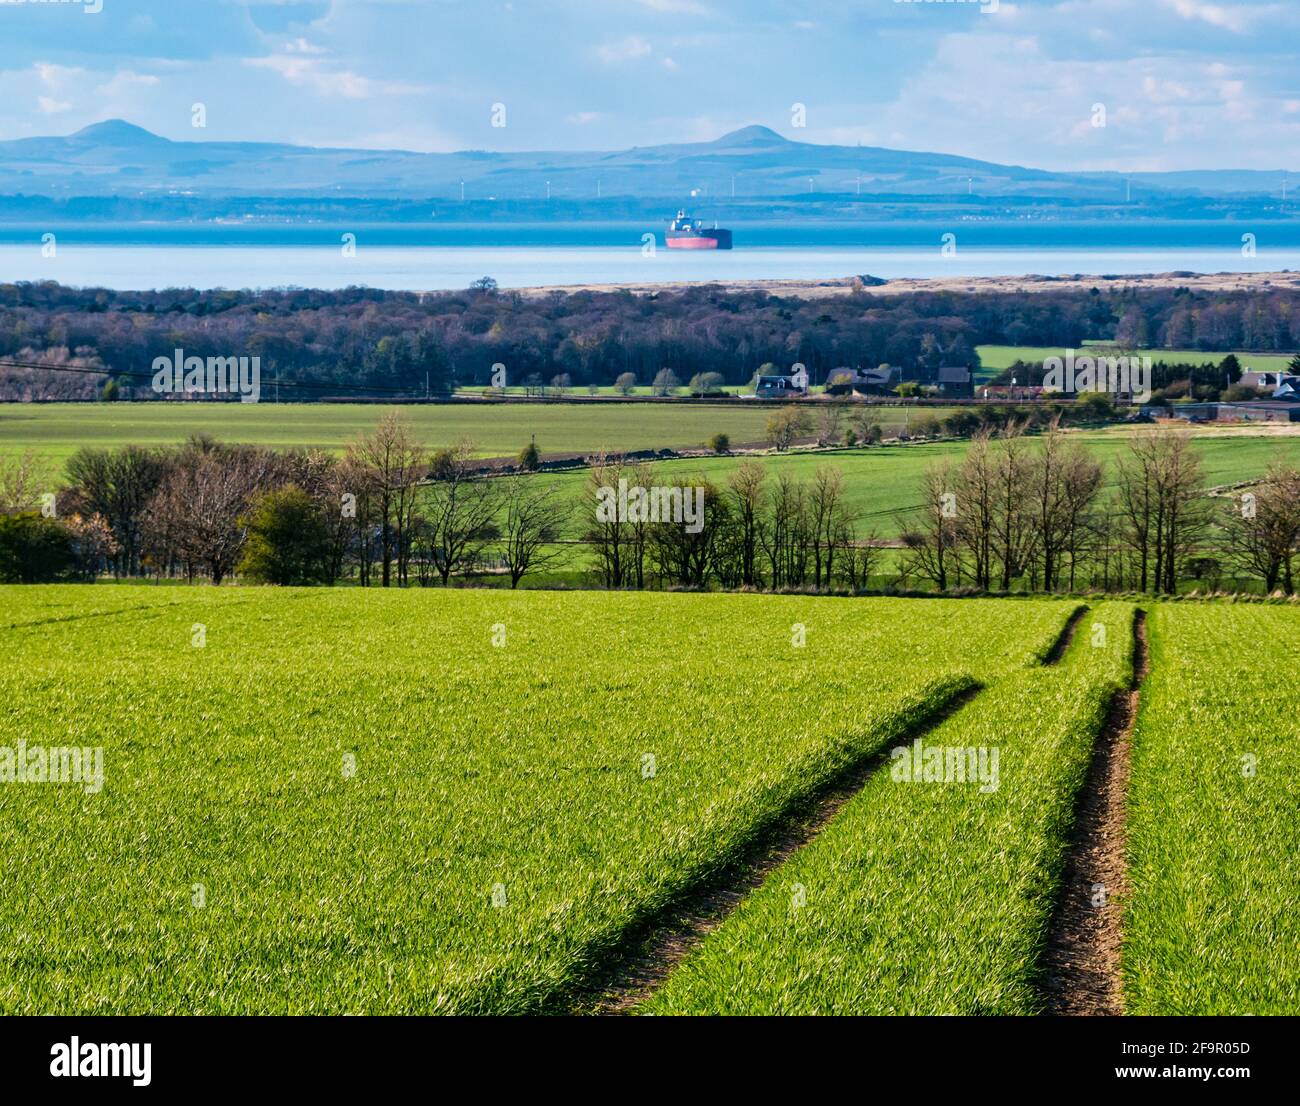 Vista a través del campo de cultivo verde hasta Firth of Forth con buque cisterna anclado, East Lothian, Escocia, Reino Unido Foto de stock